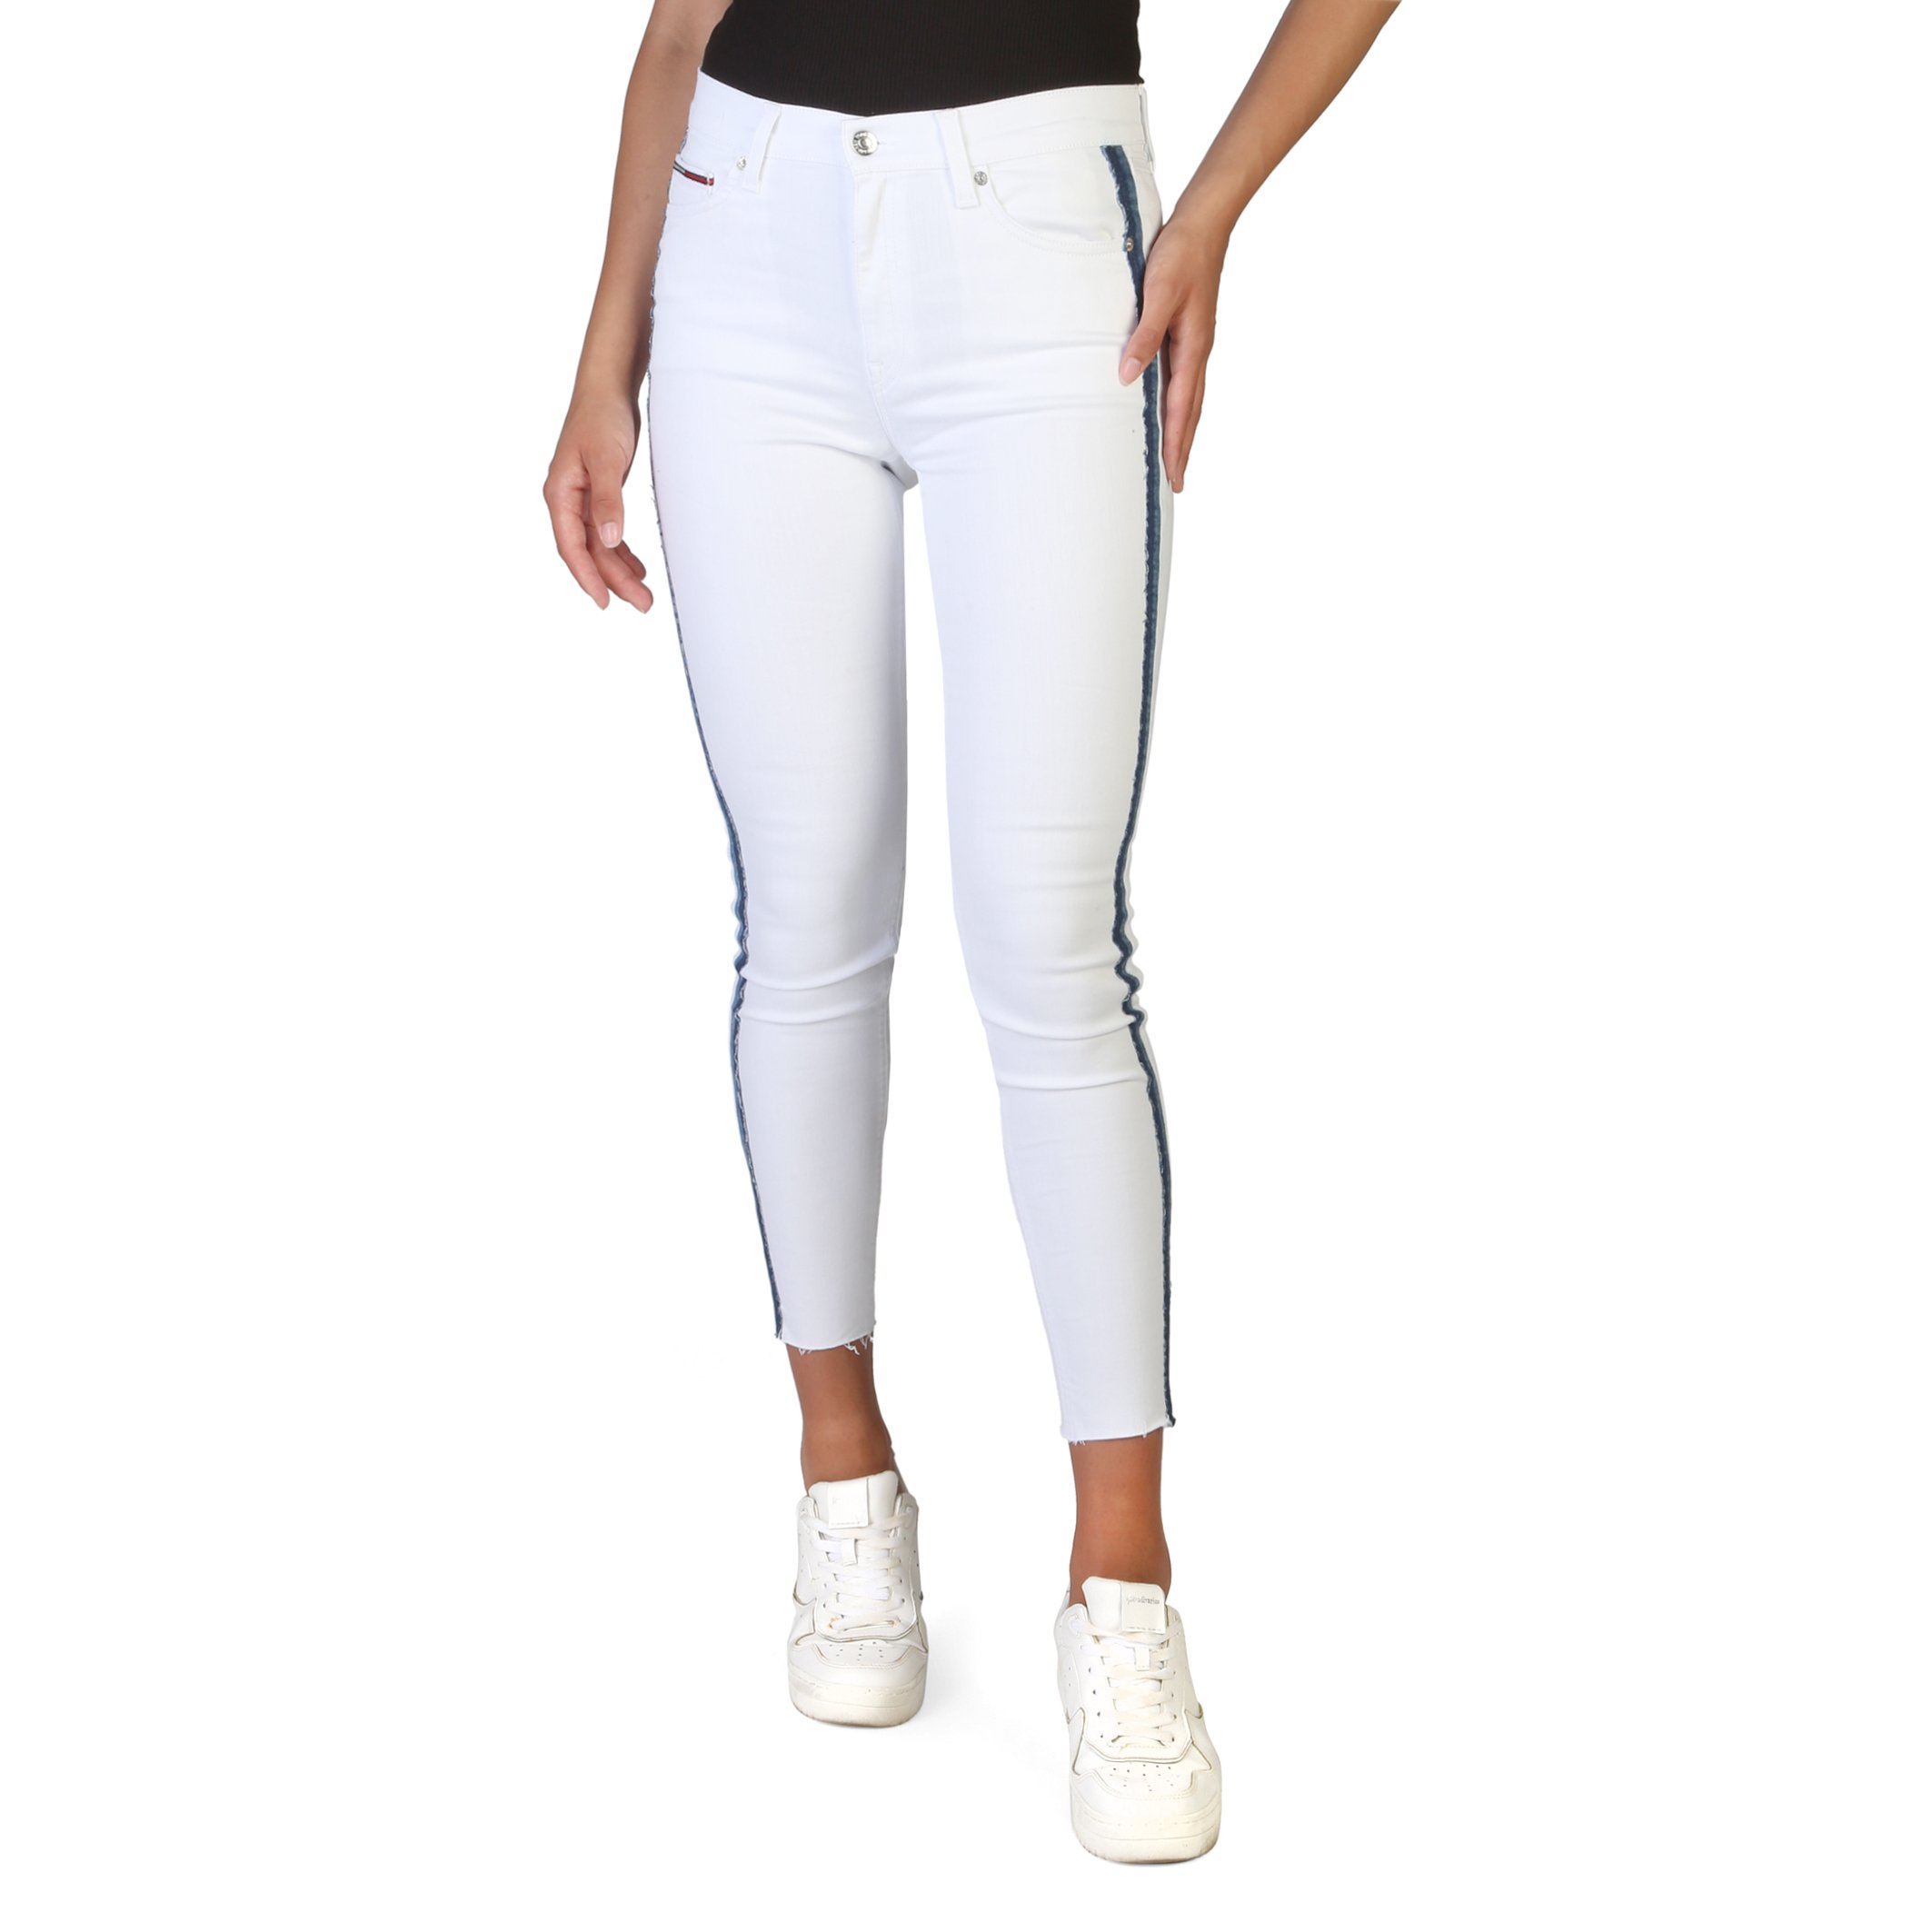 Tommy Hilfiger Women's Jeans White DW0DW06344 - white-1 25